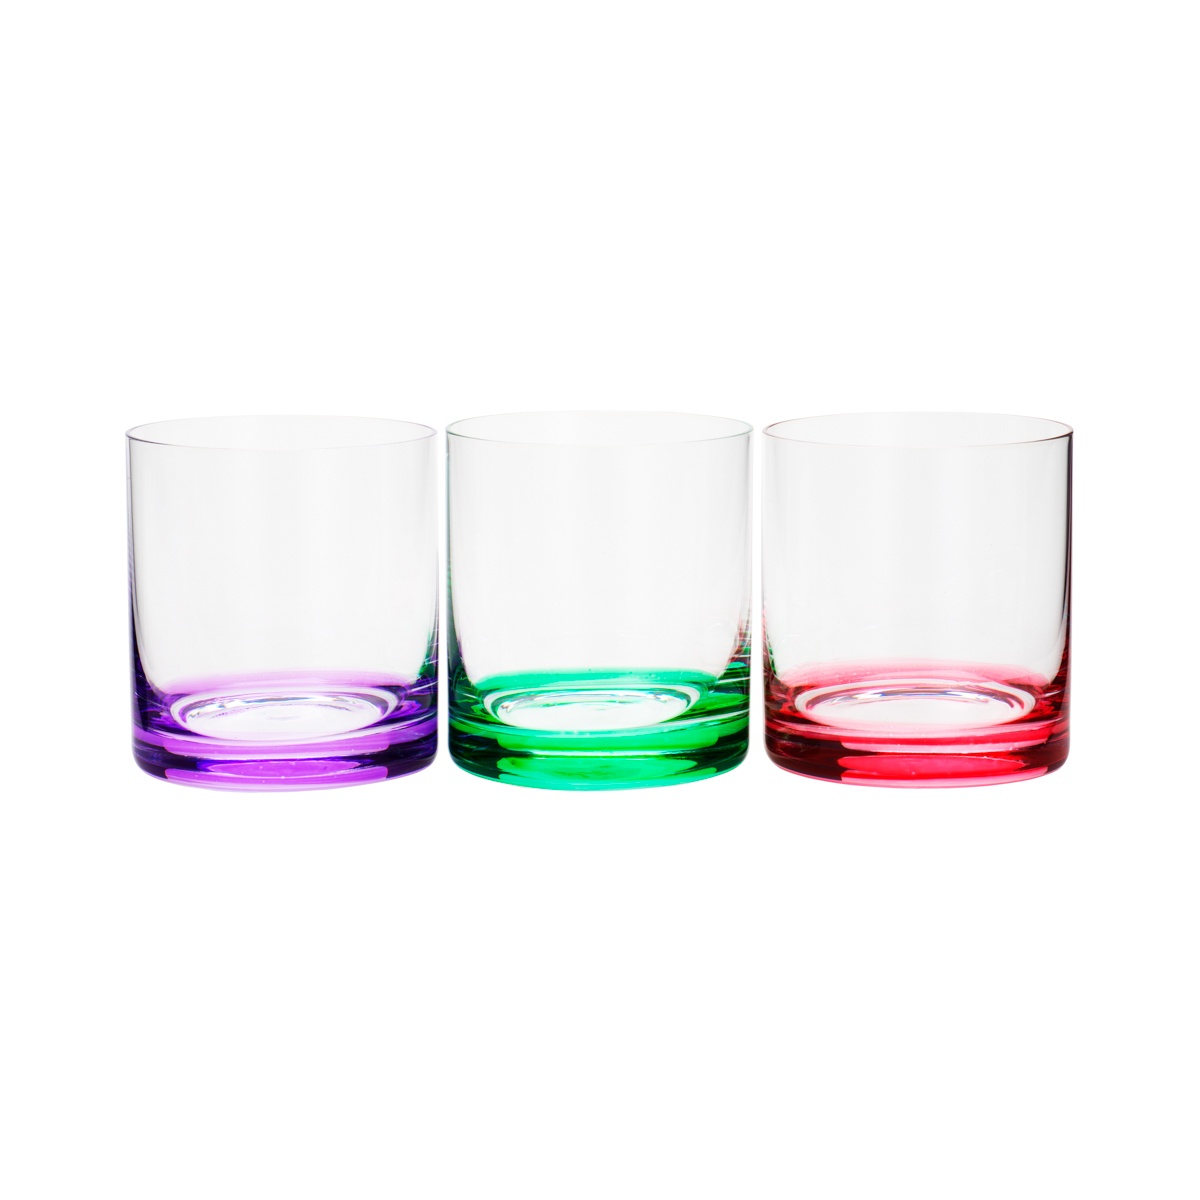 Jogo 6 copos whisky cristal colorido Favorit 310ml Bohemia